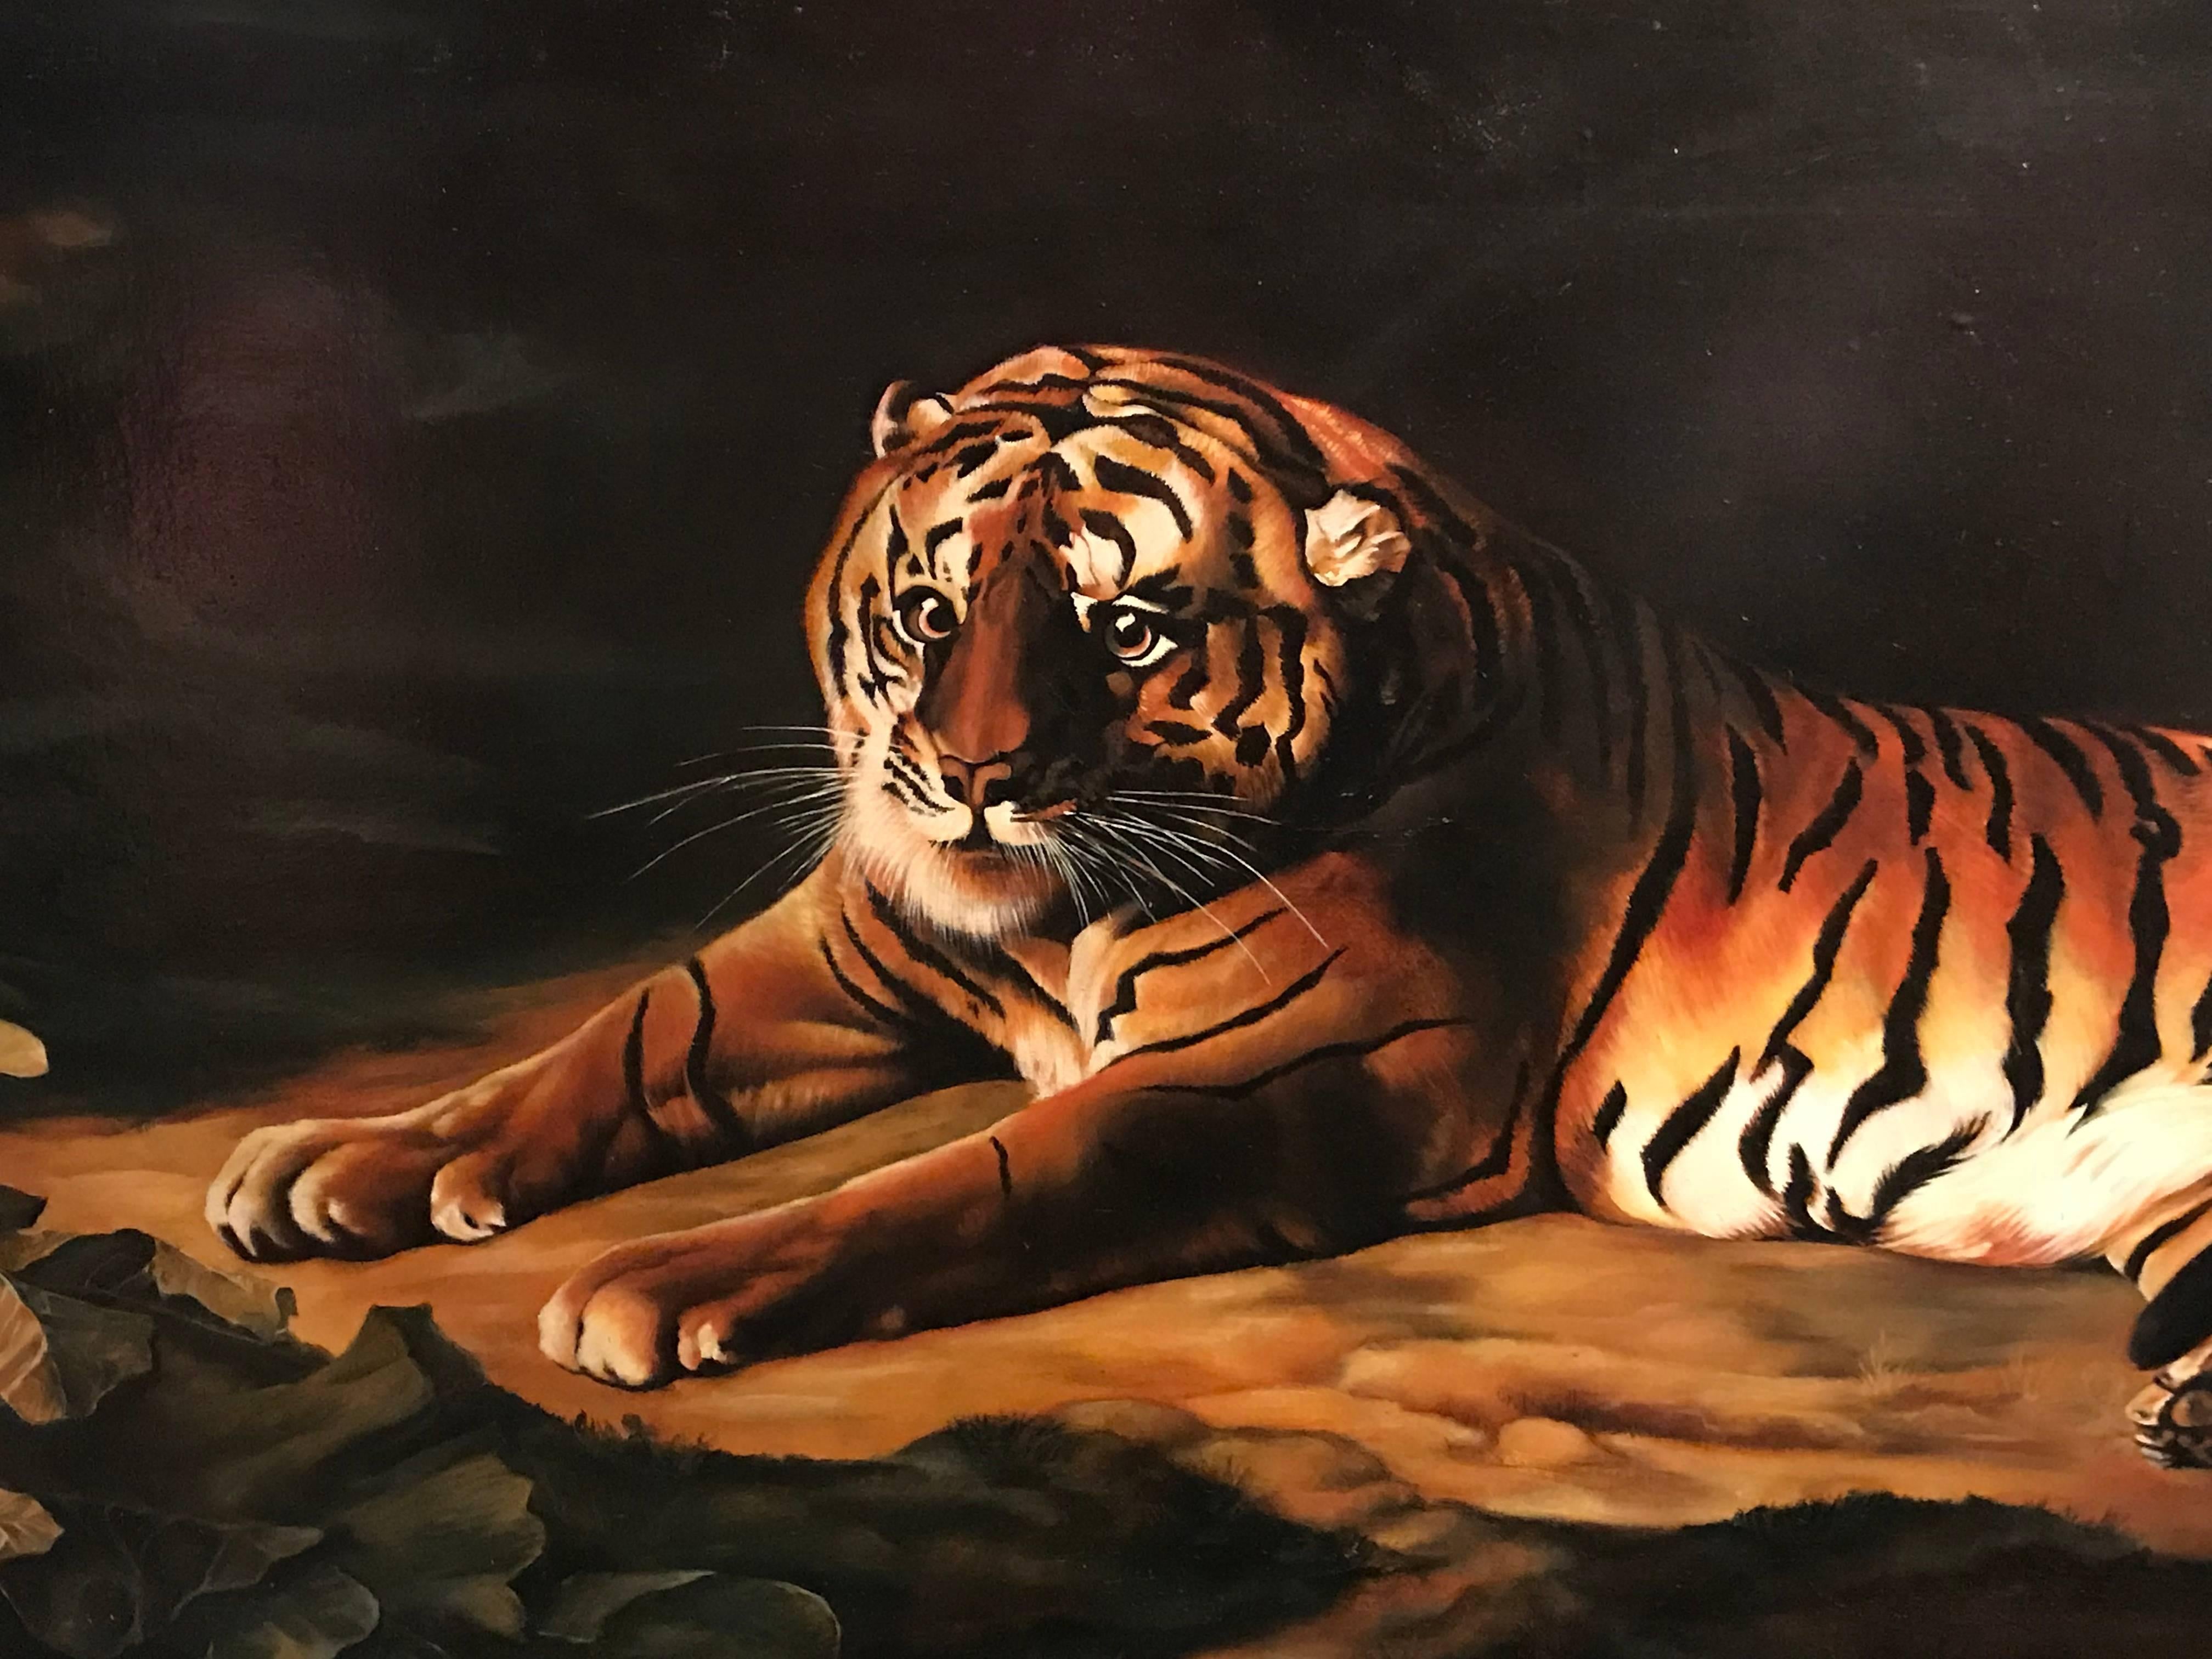 Le tigre
British School, vers les années 1980
d'après George Stubbs, C.C.C.
peinture à l'huile sur toile, encadrée

encadré : 26 x 50 pouces

Superbe peinture à l'huile sur toile, peinte à très grande échelle (le cadre mesure 26 x 50 pouces)